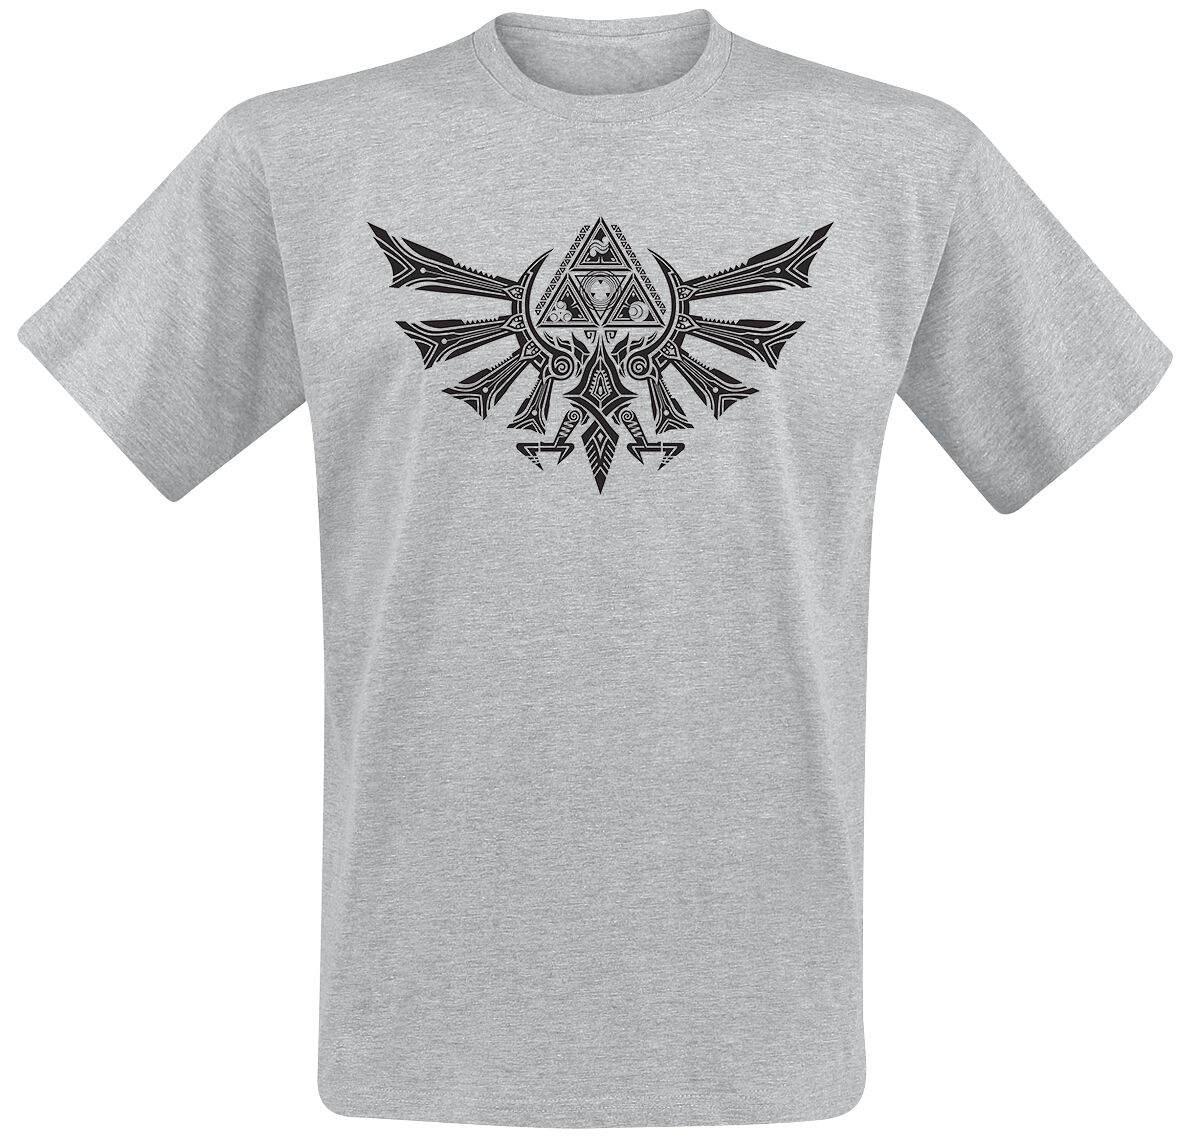 The Legend Of Zelda - Gaming T-Shirt - Hyrule Tribal - S bis XXL - für Männer - Größe L - grau meliert